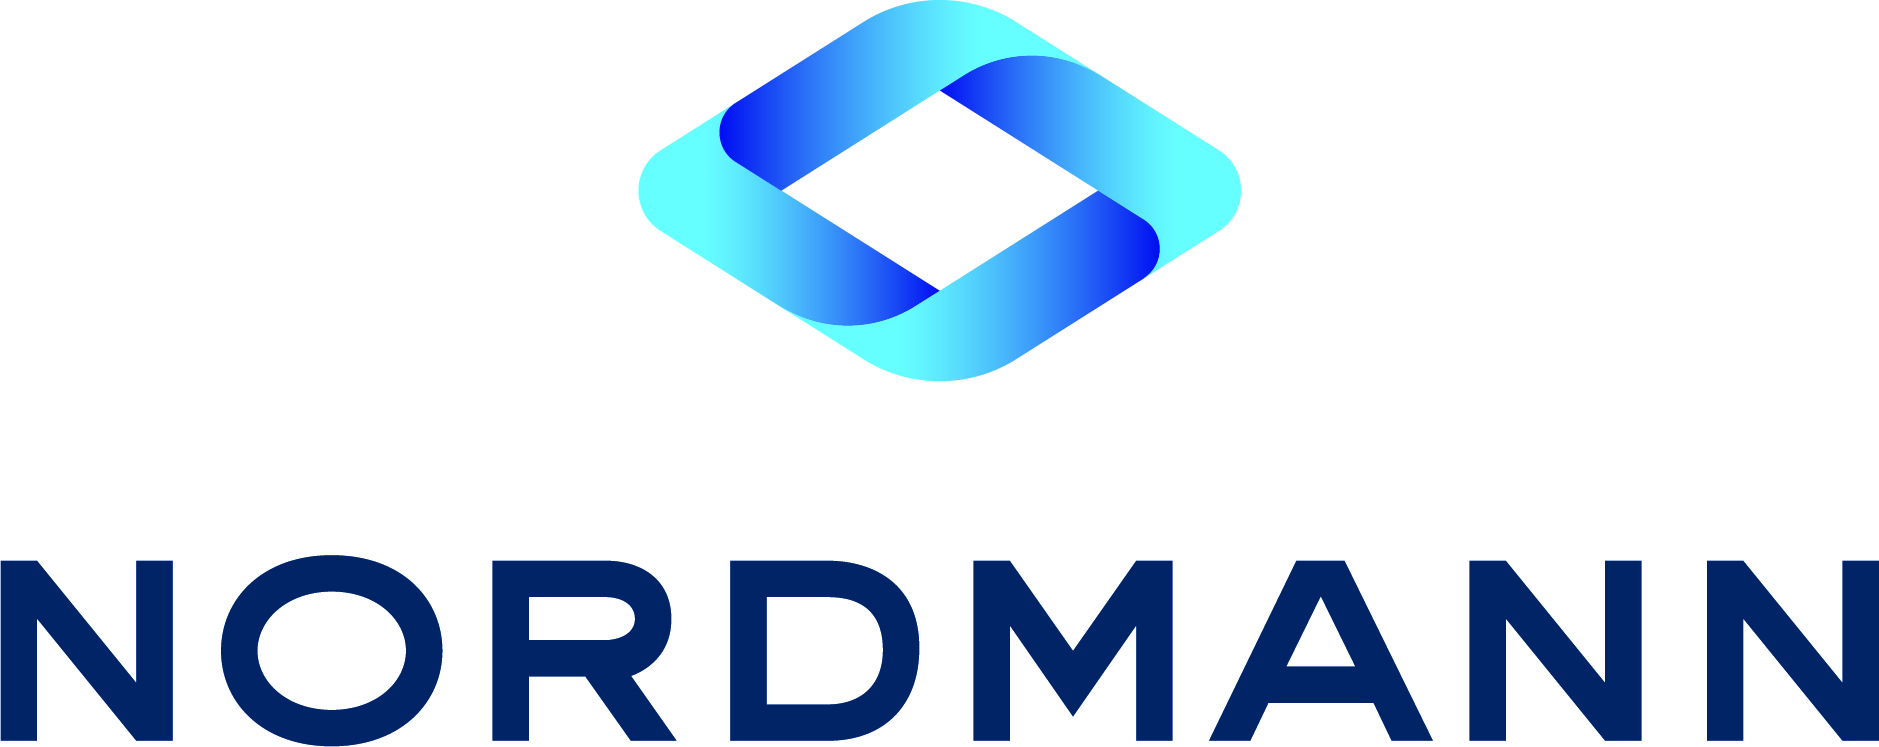 Nordmann  Rassmann GmbH - Nordmann